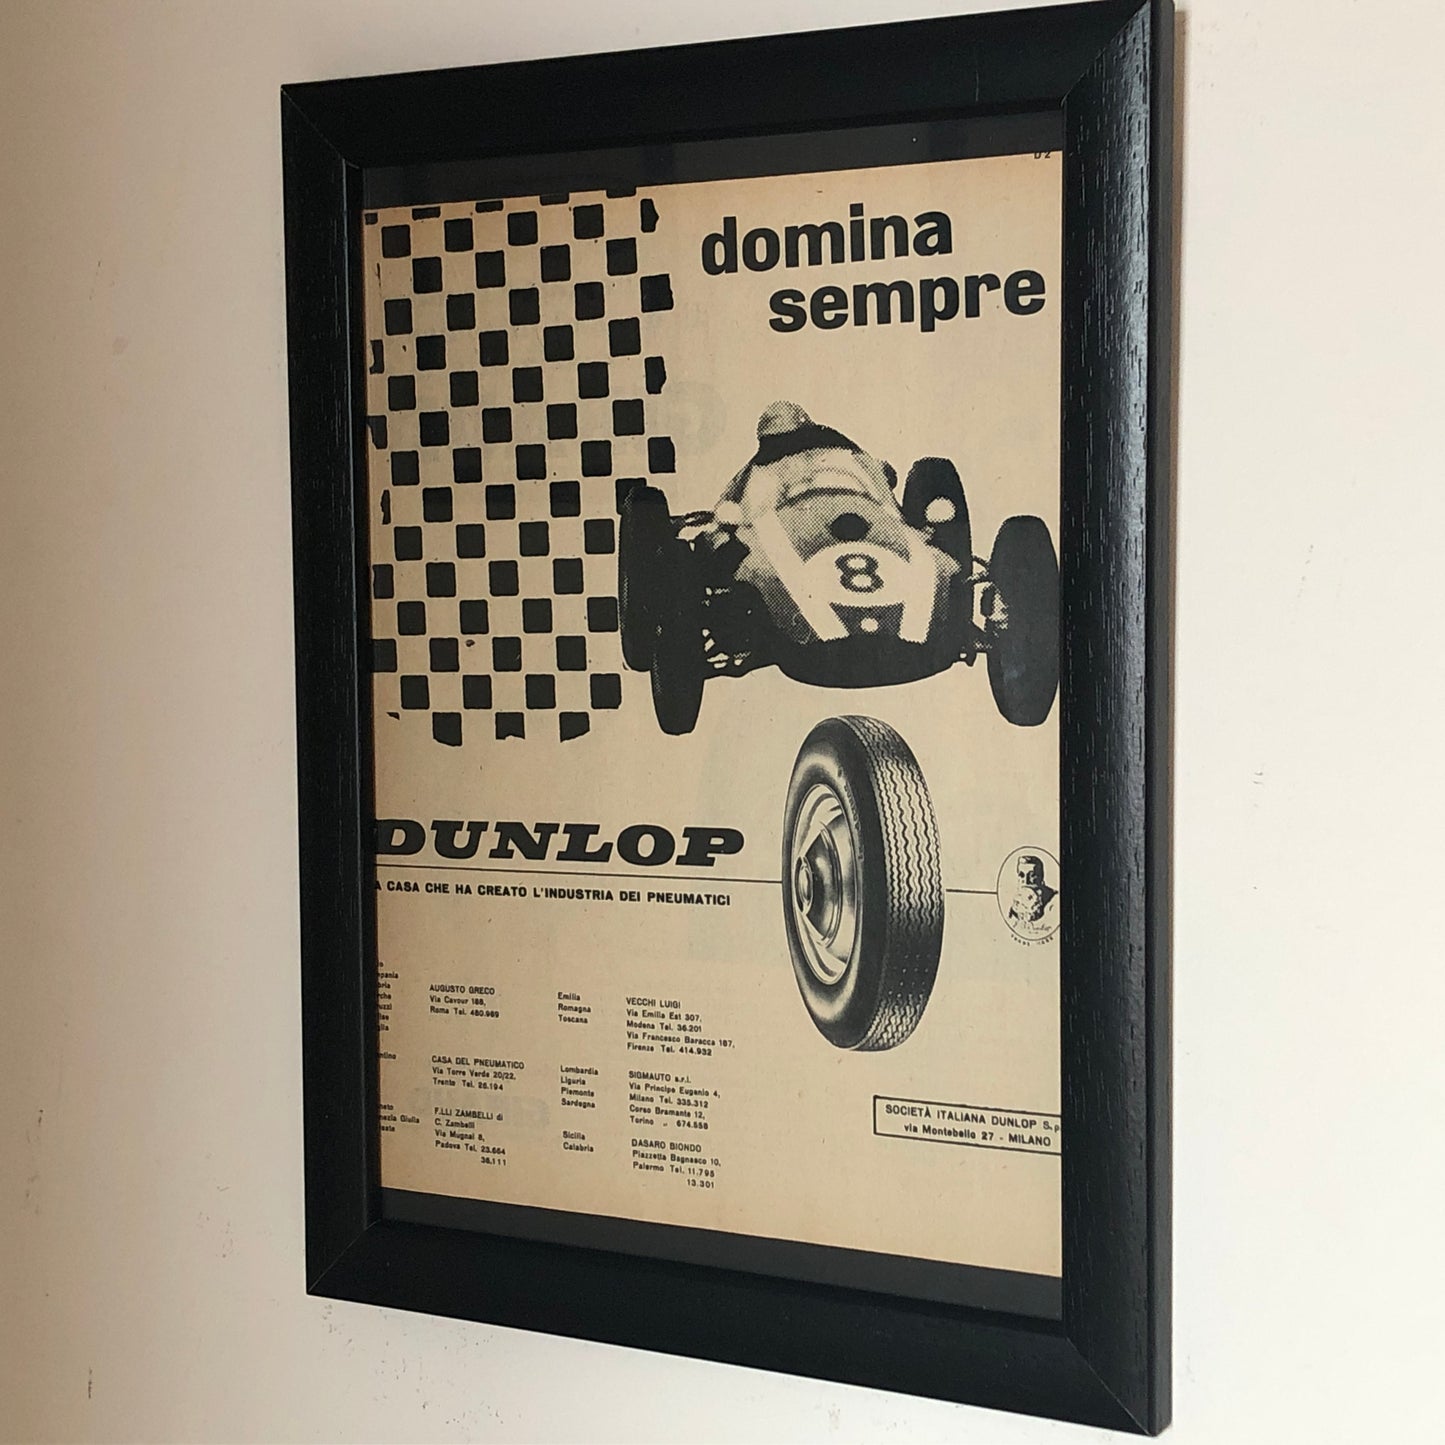 Dunlop, Advertising Year 1960 Dunlop Tires Always Dominates